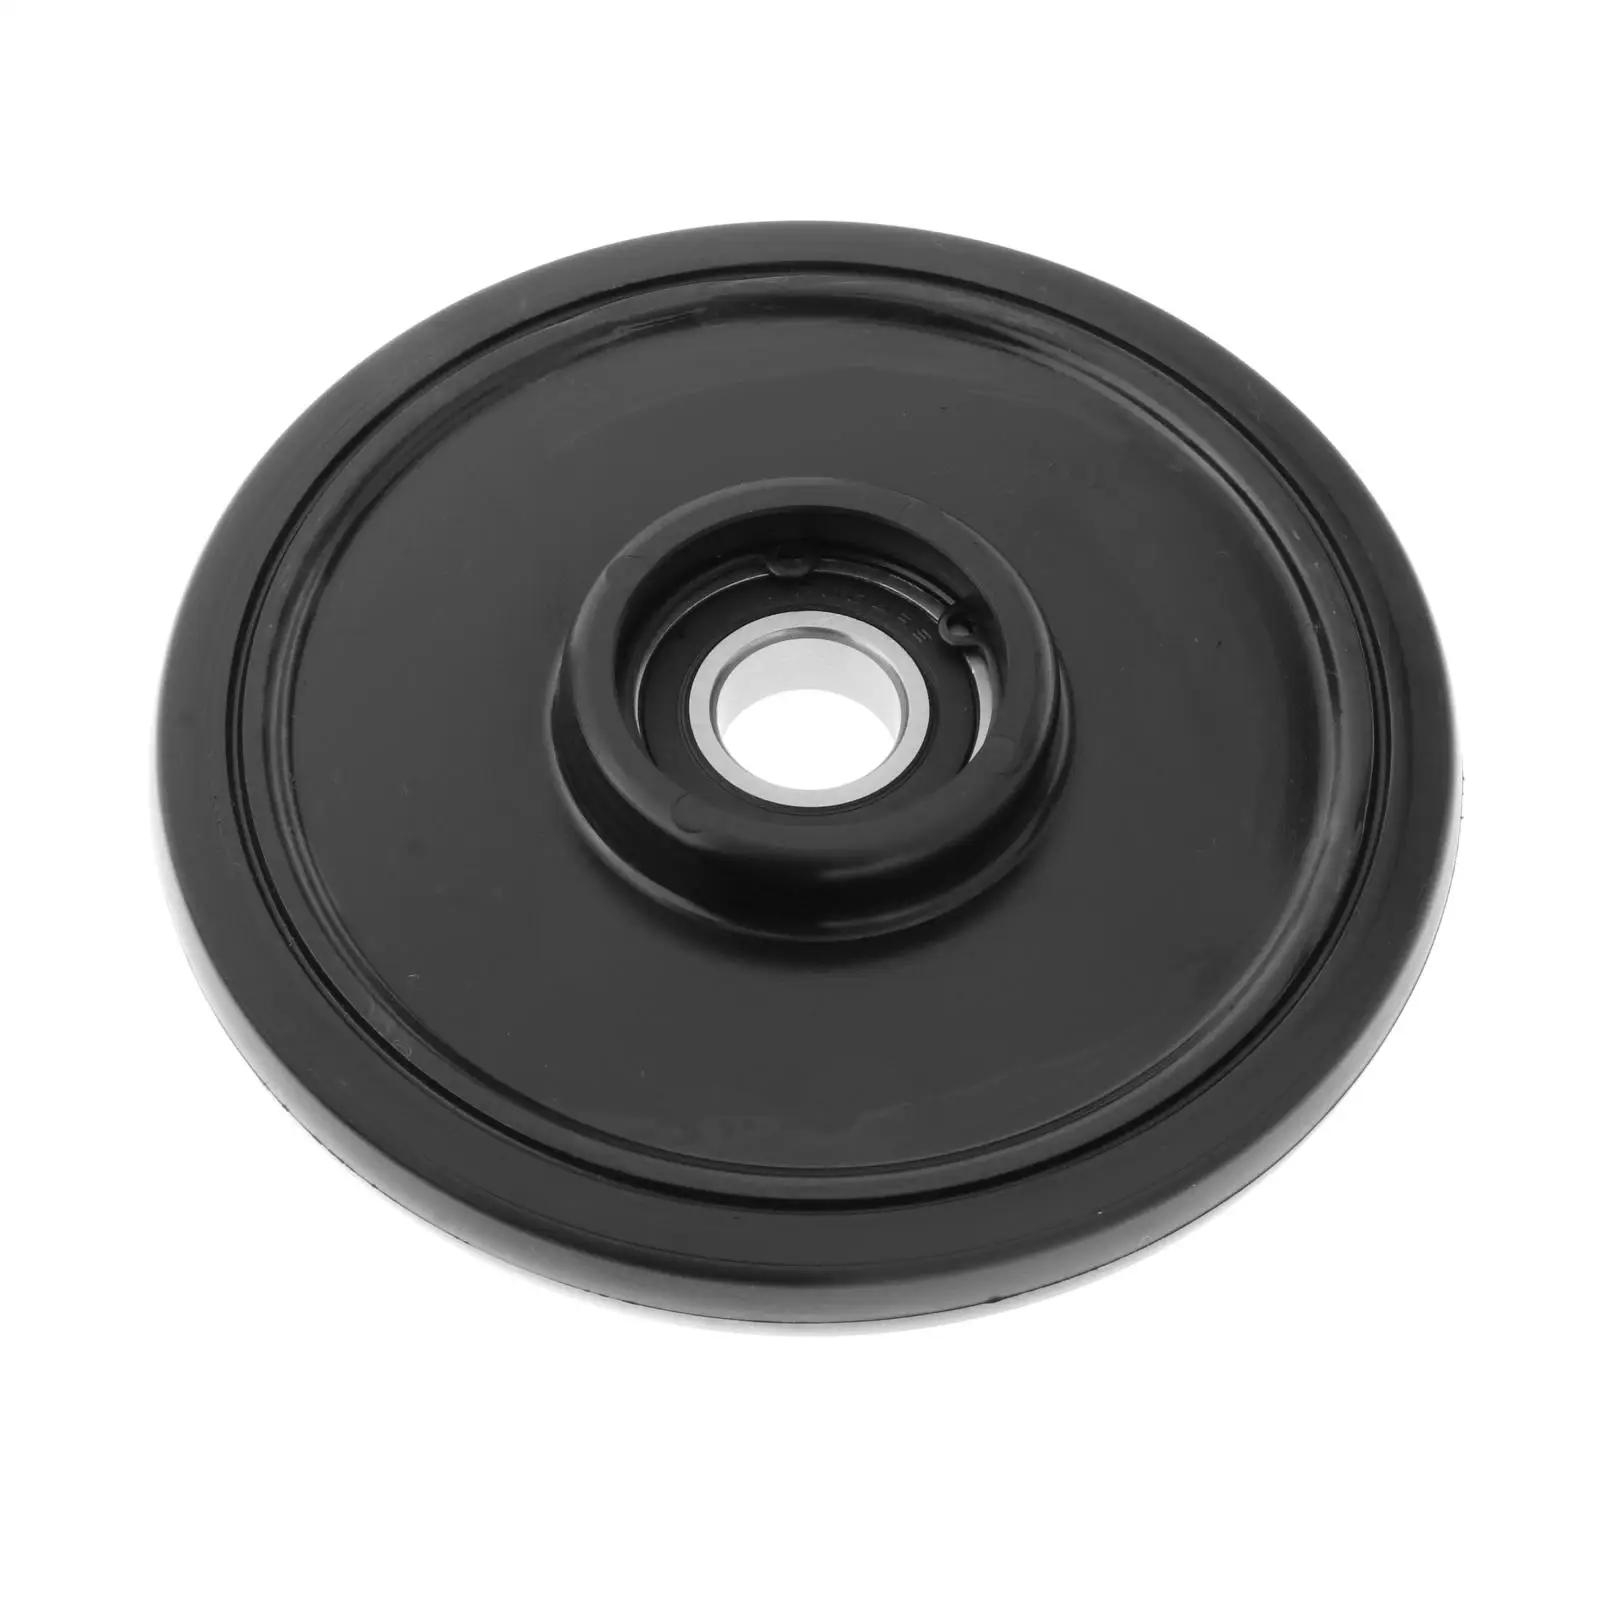 

Black 5.63 x 20mm Idler Wheel Bearing for Polaris 3604-039 3604-043 3604-047 3604-486, 3604-681 3604-807 3604-048 3604-420